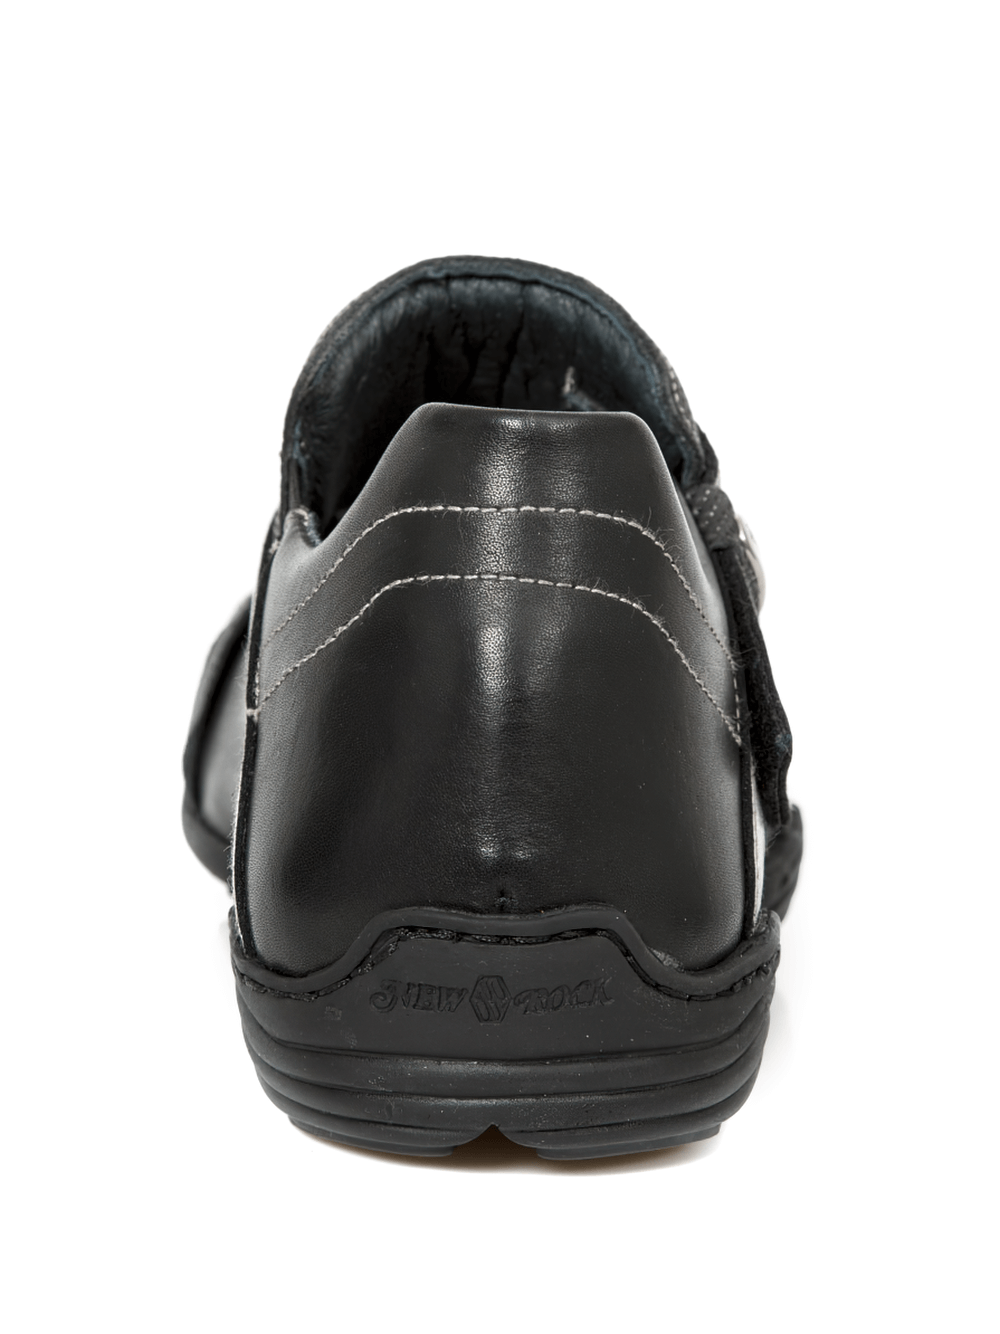 NEW ROCK Chaussures Rock noires avec sangle Velcro argentée pour hommes